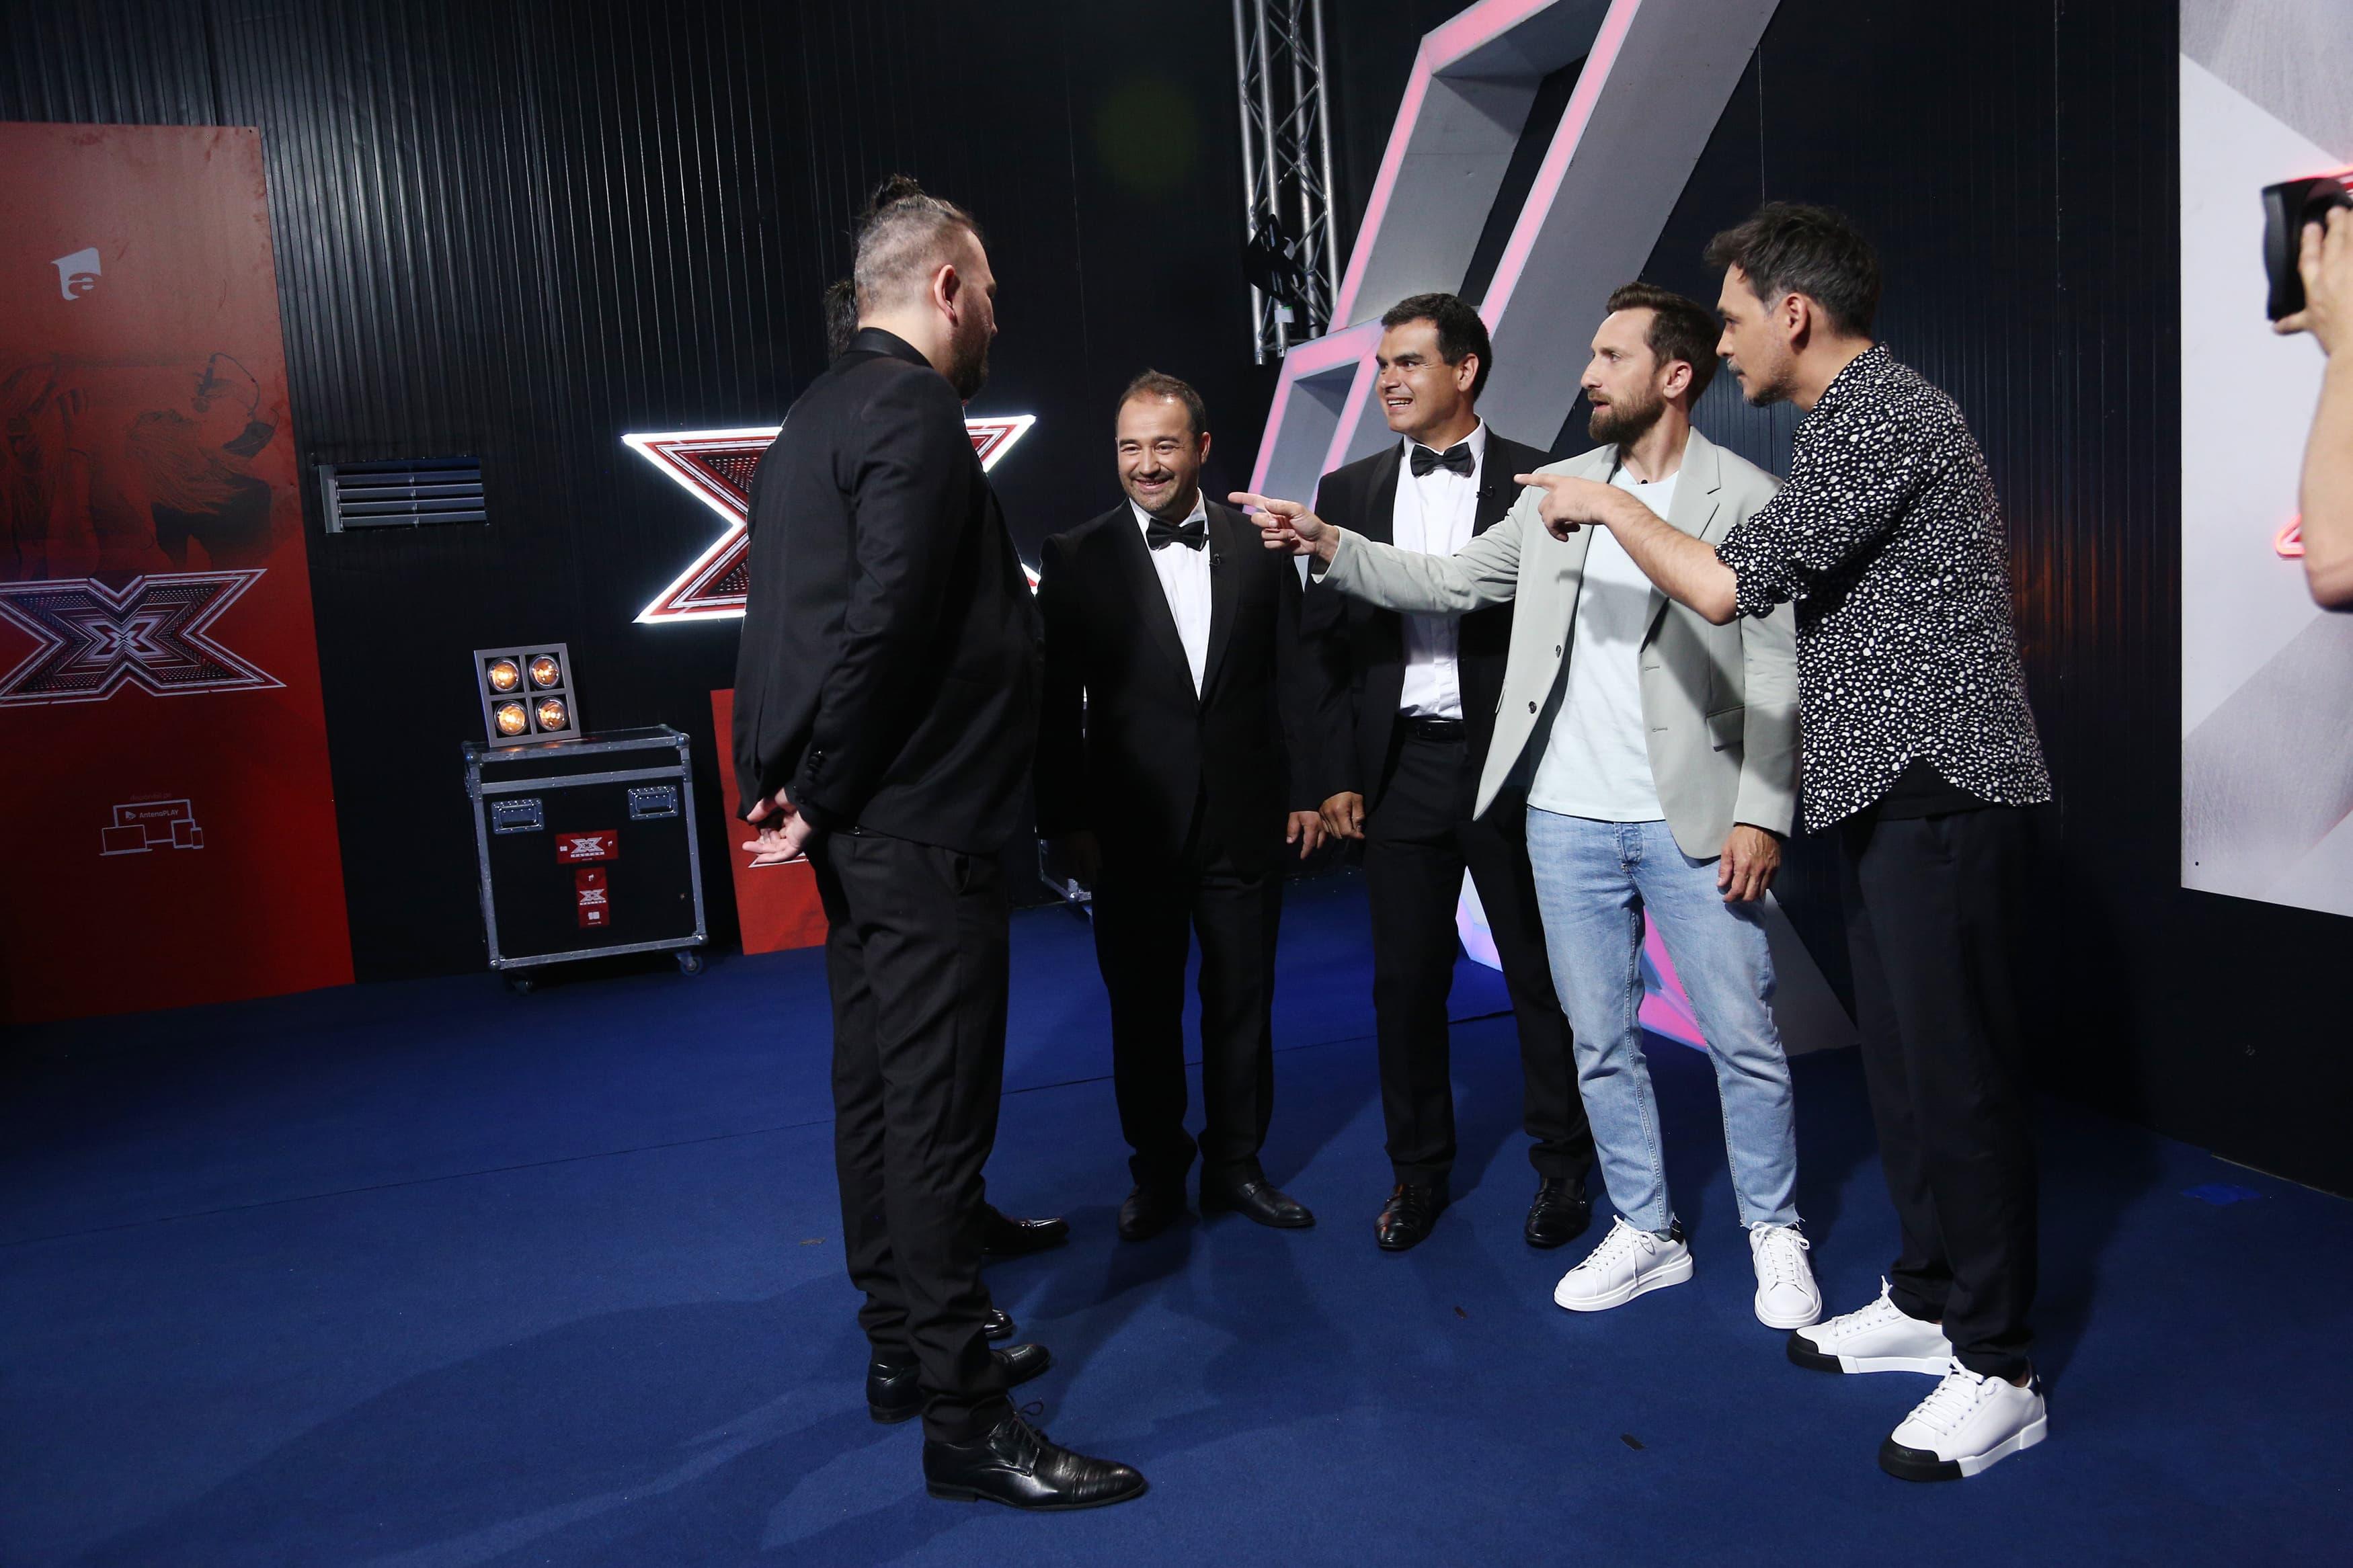 Quartet Belcanto la X Factor sezonul 10